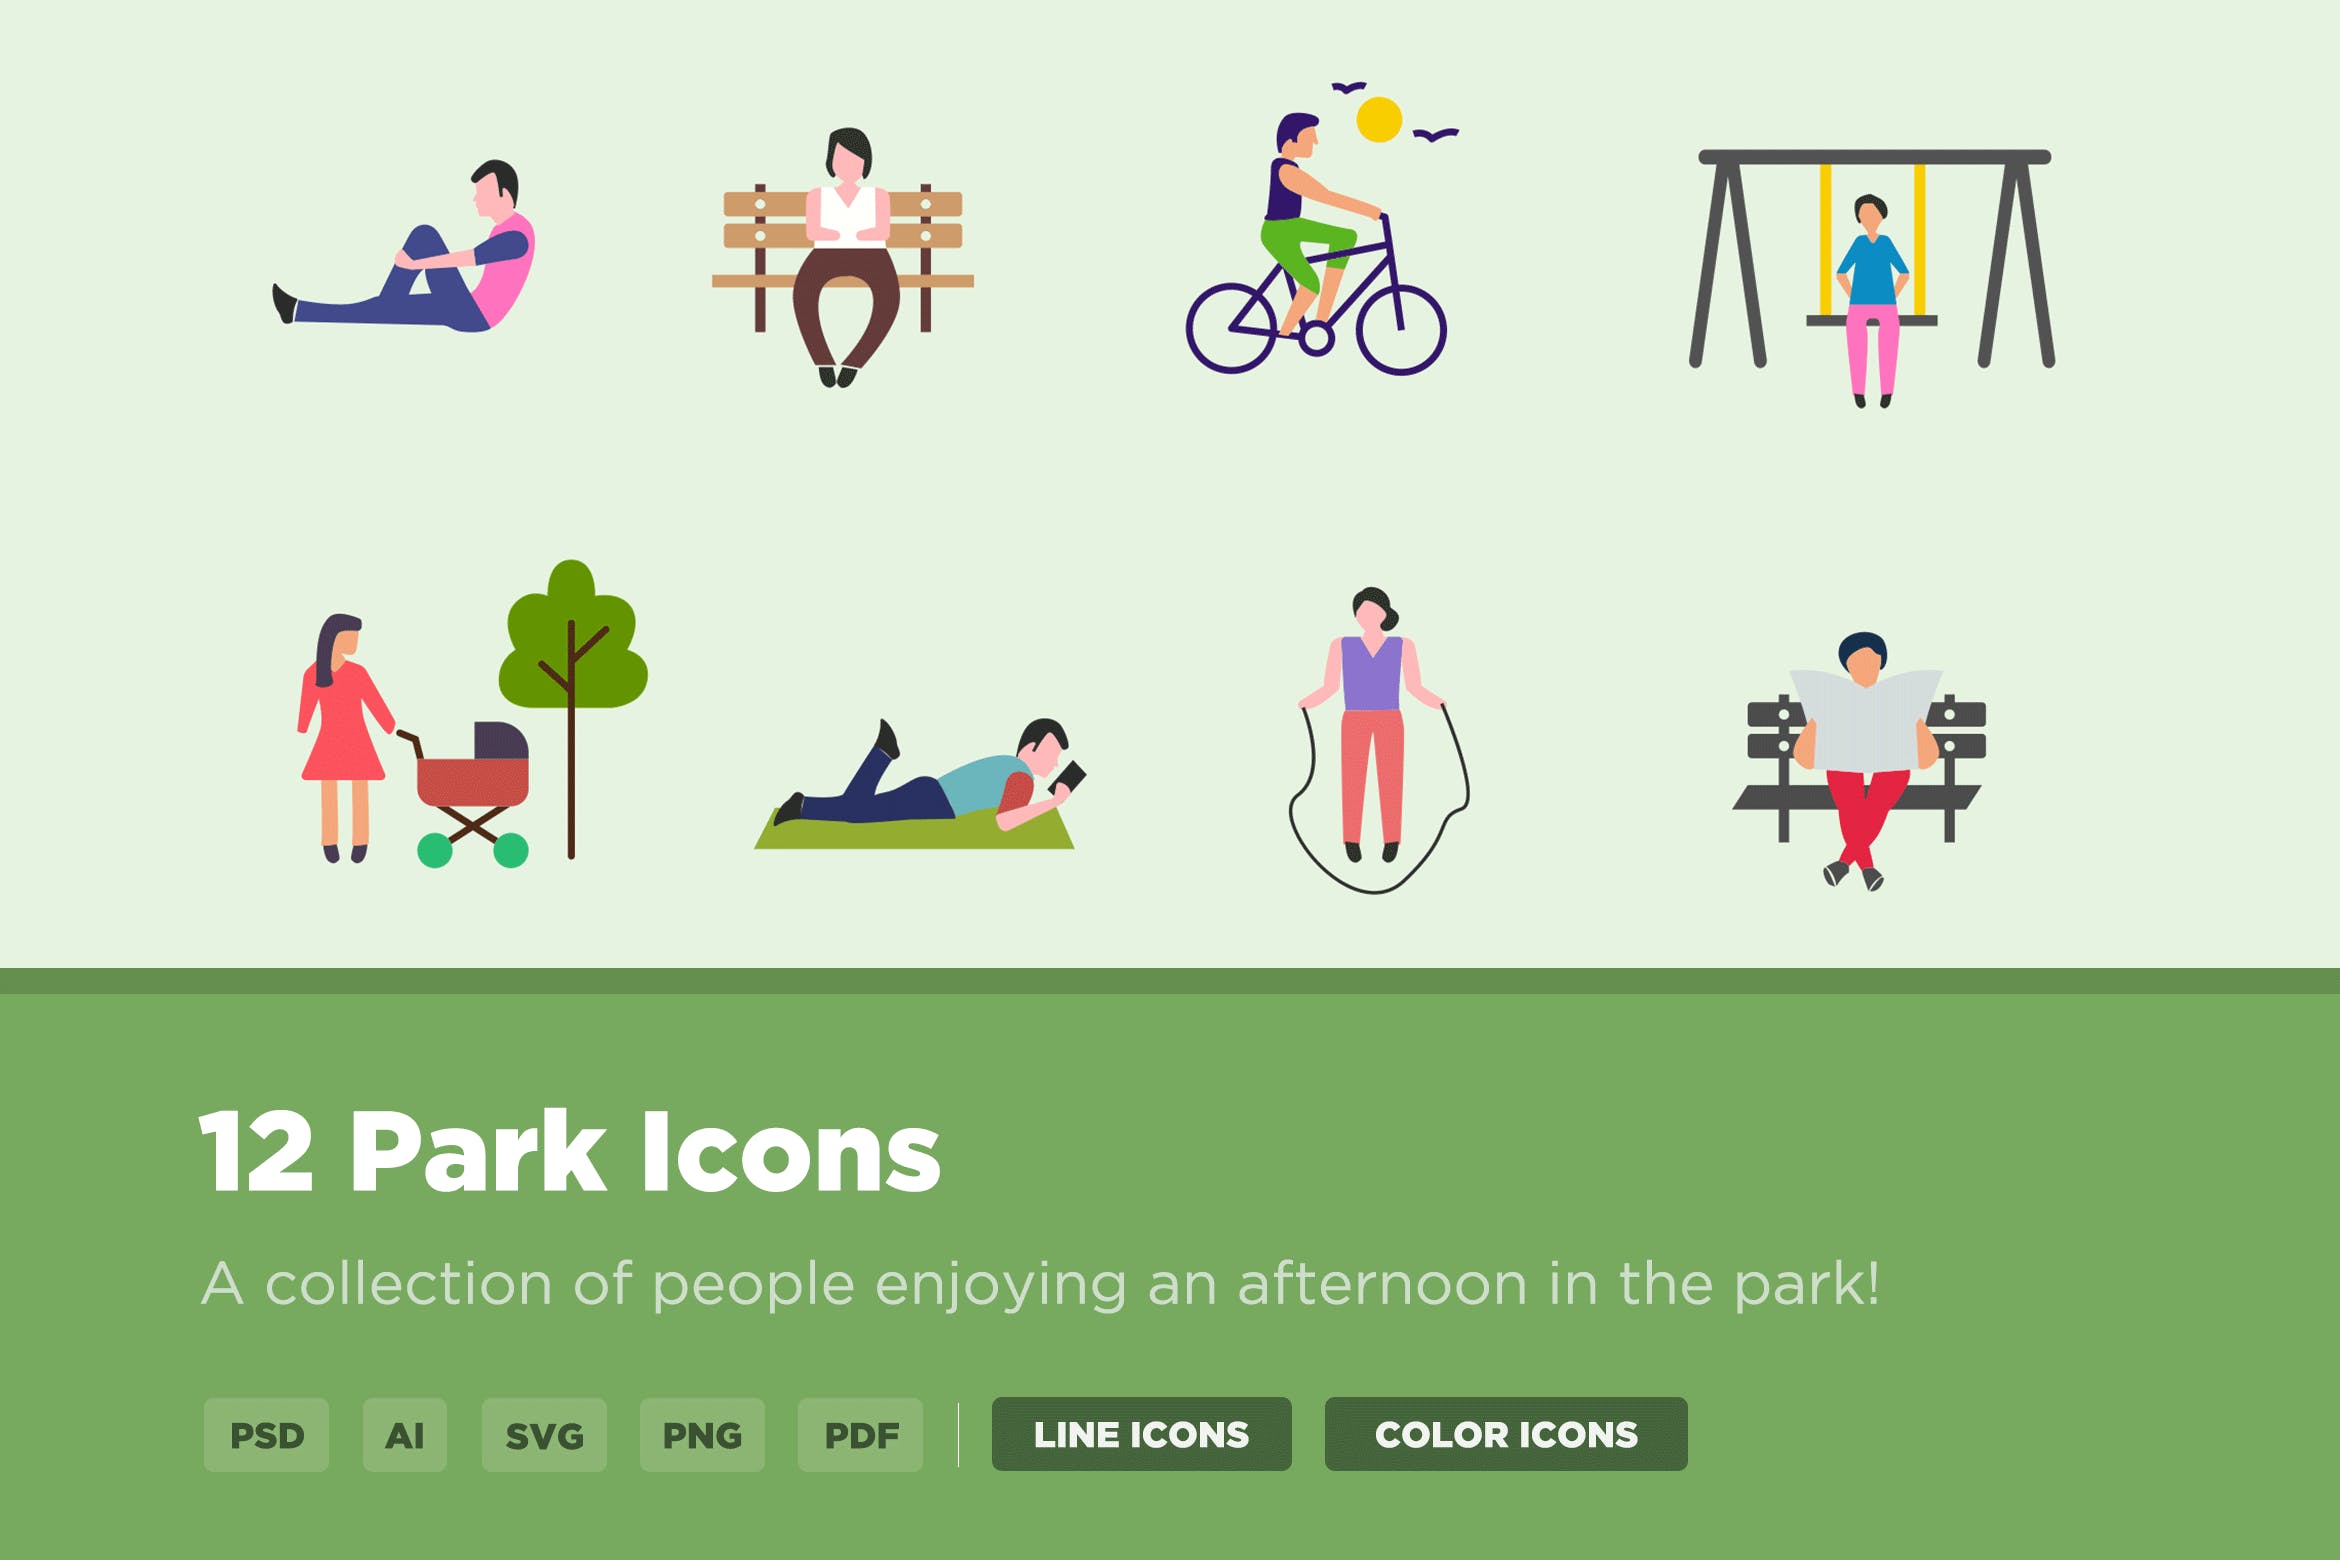 公园设施矢量图标 12 Park Icons